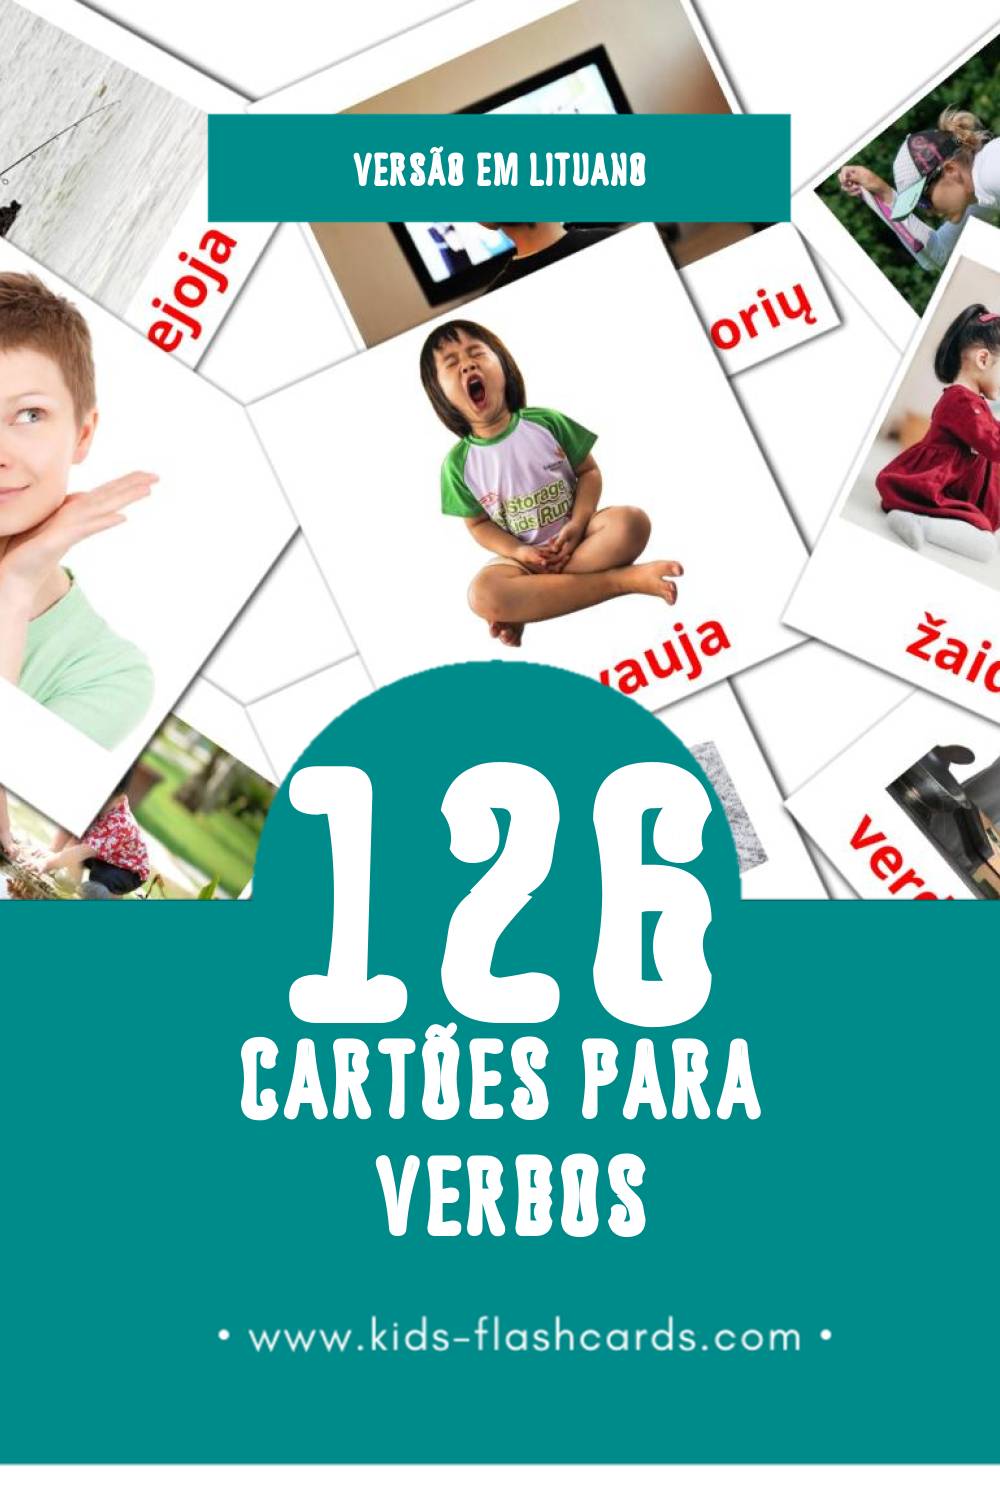 Flashcards de Veiksmažodžiai Visuais para Toddlers (126 cartões em Lituano)